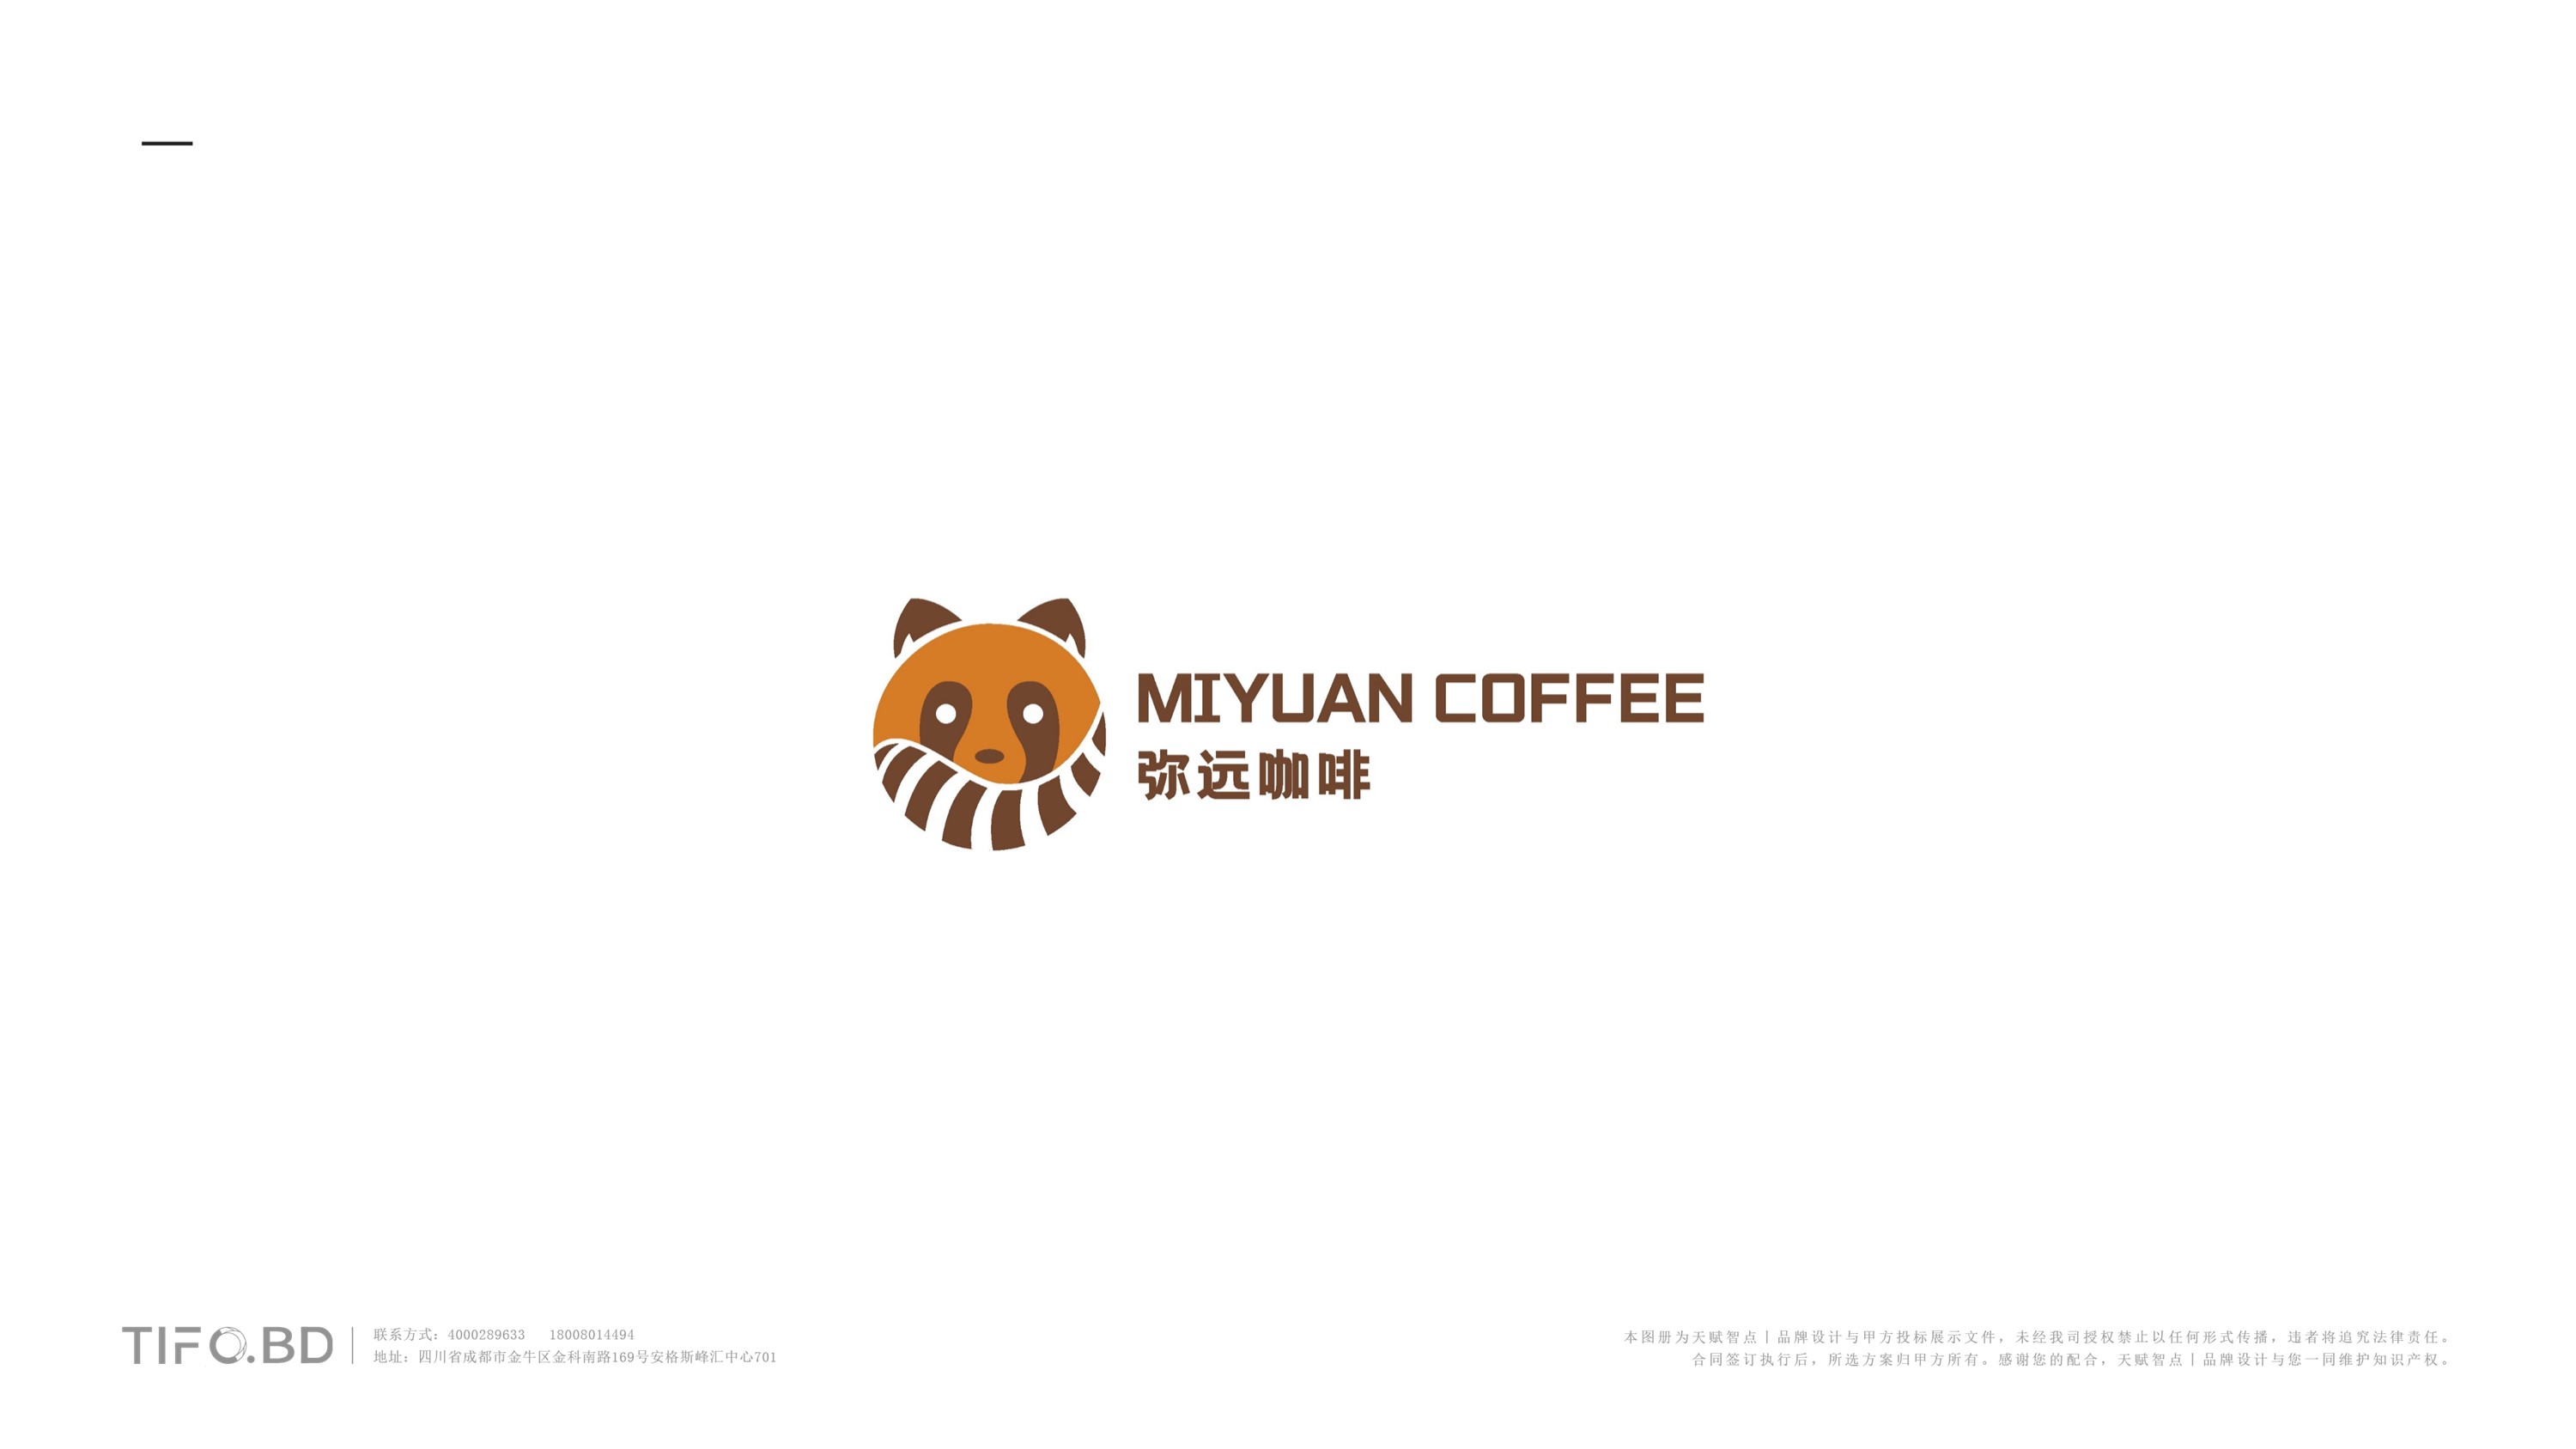 咖啡餐饮品牌全案设计 (31).jpg